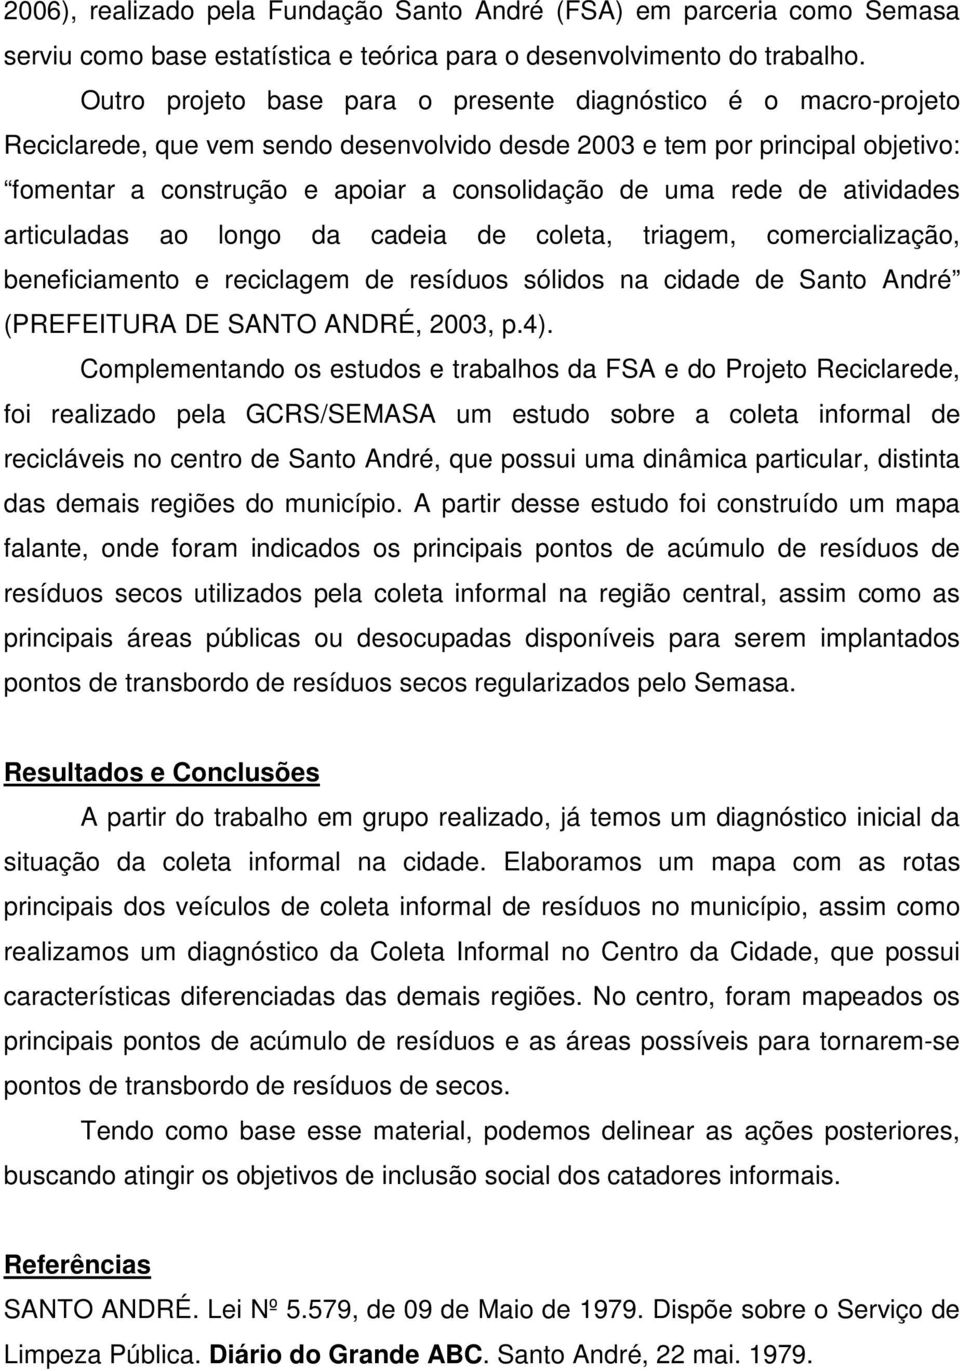 rede de atividades articuladas ao longo da cadeia de coleta, triagem, comercialização, beneficiamento e reciclagem de resíduos sólidos na cidade de Santo André (PREFEITURA DE SANTO ANDRÉ, 2003, p.4).